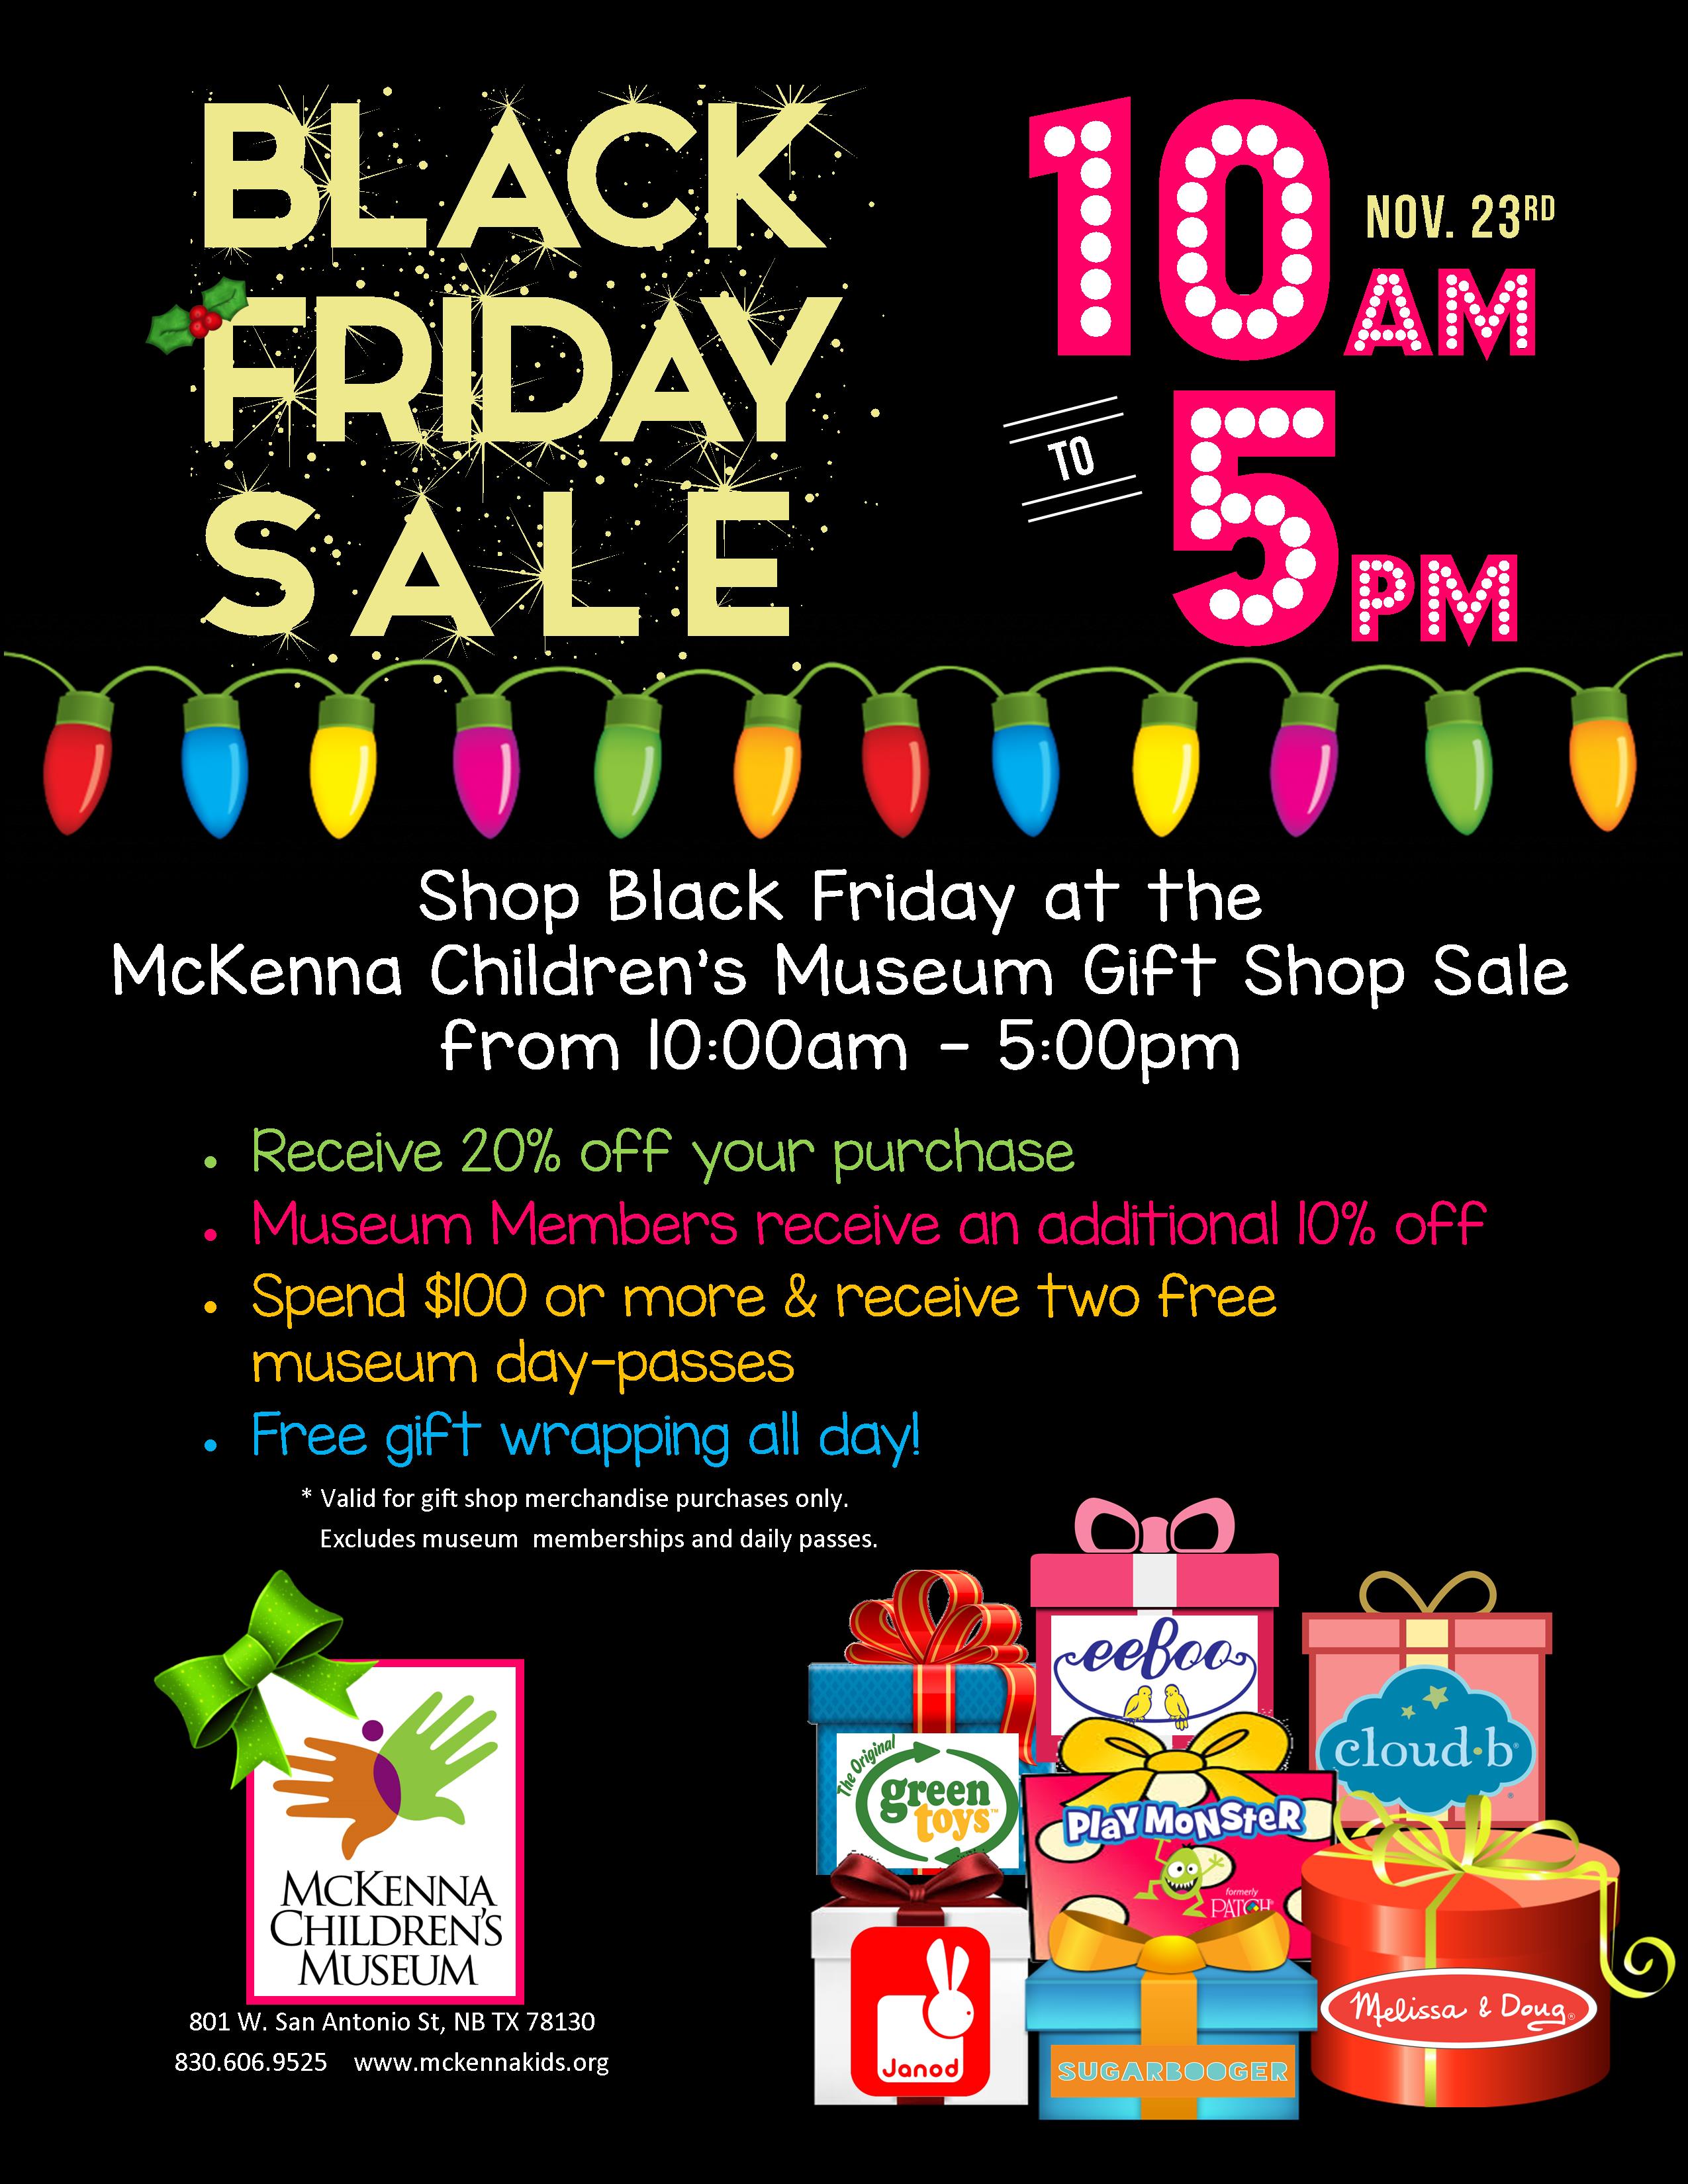 downtown new braunfels McKenna children's museum Black Friday sale